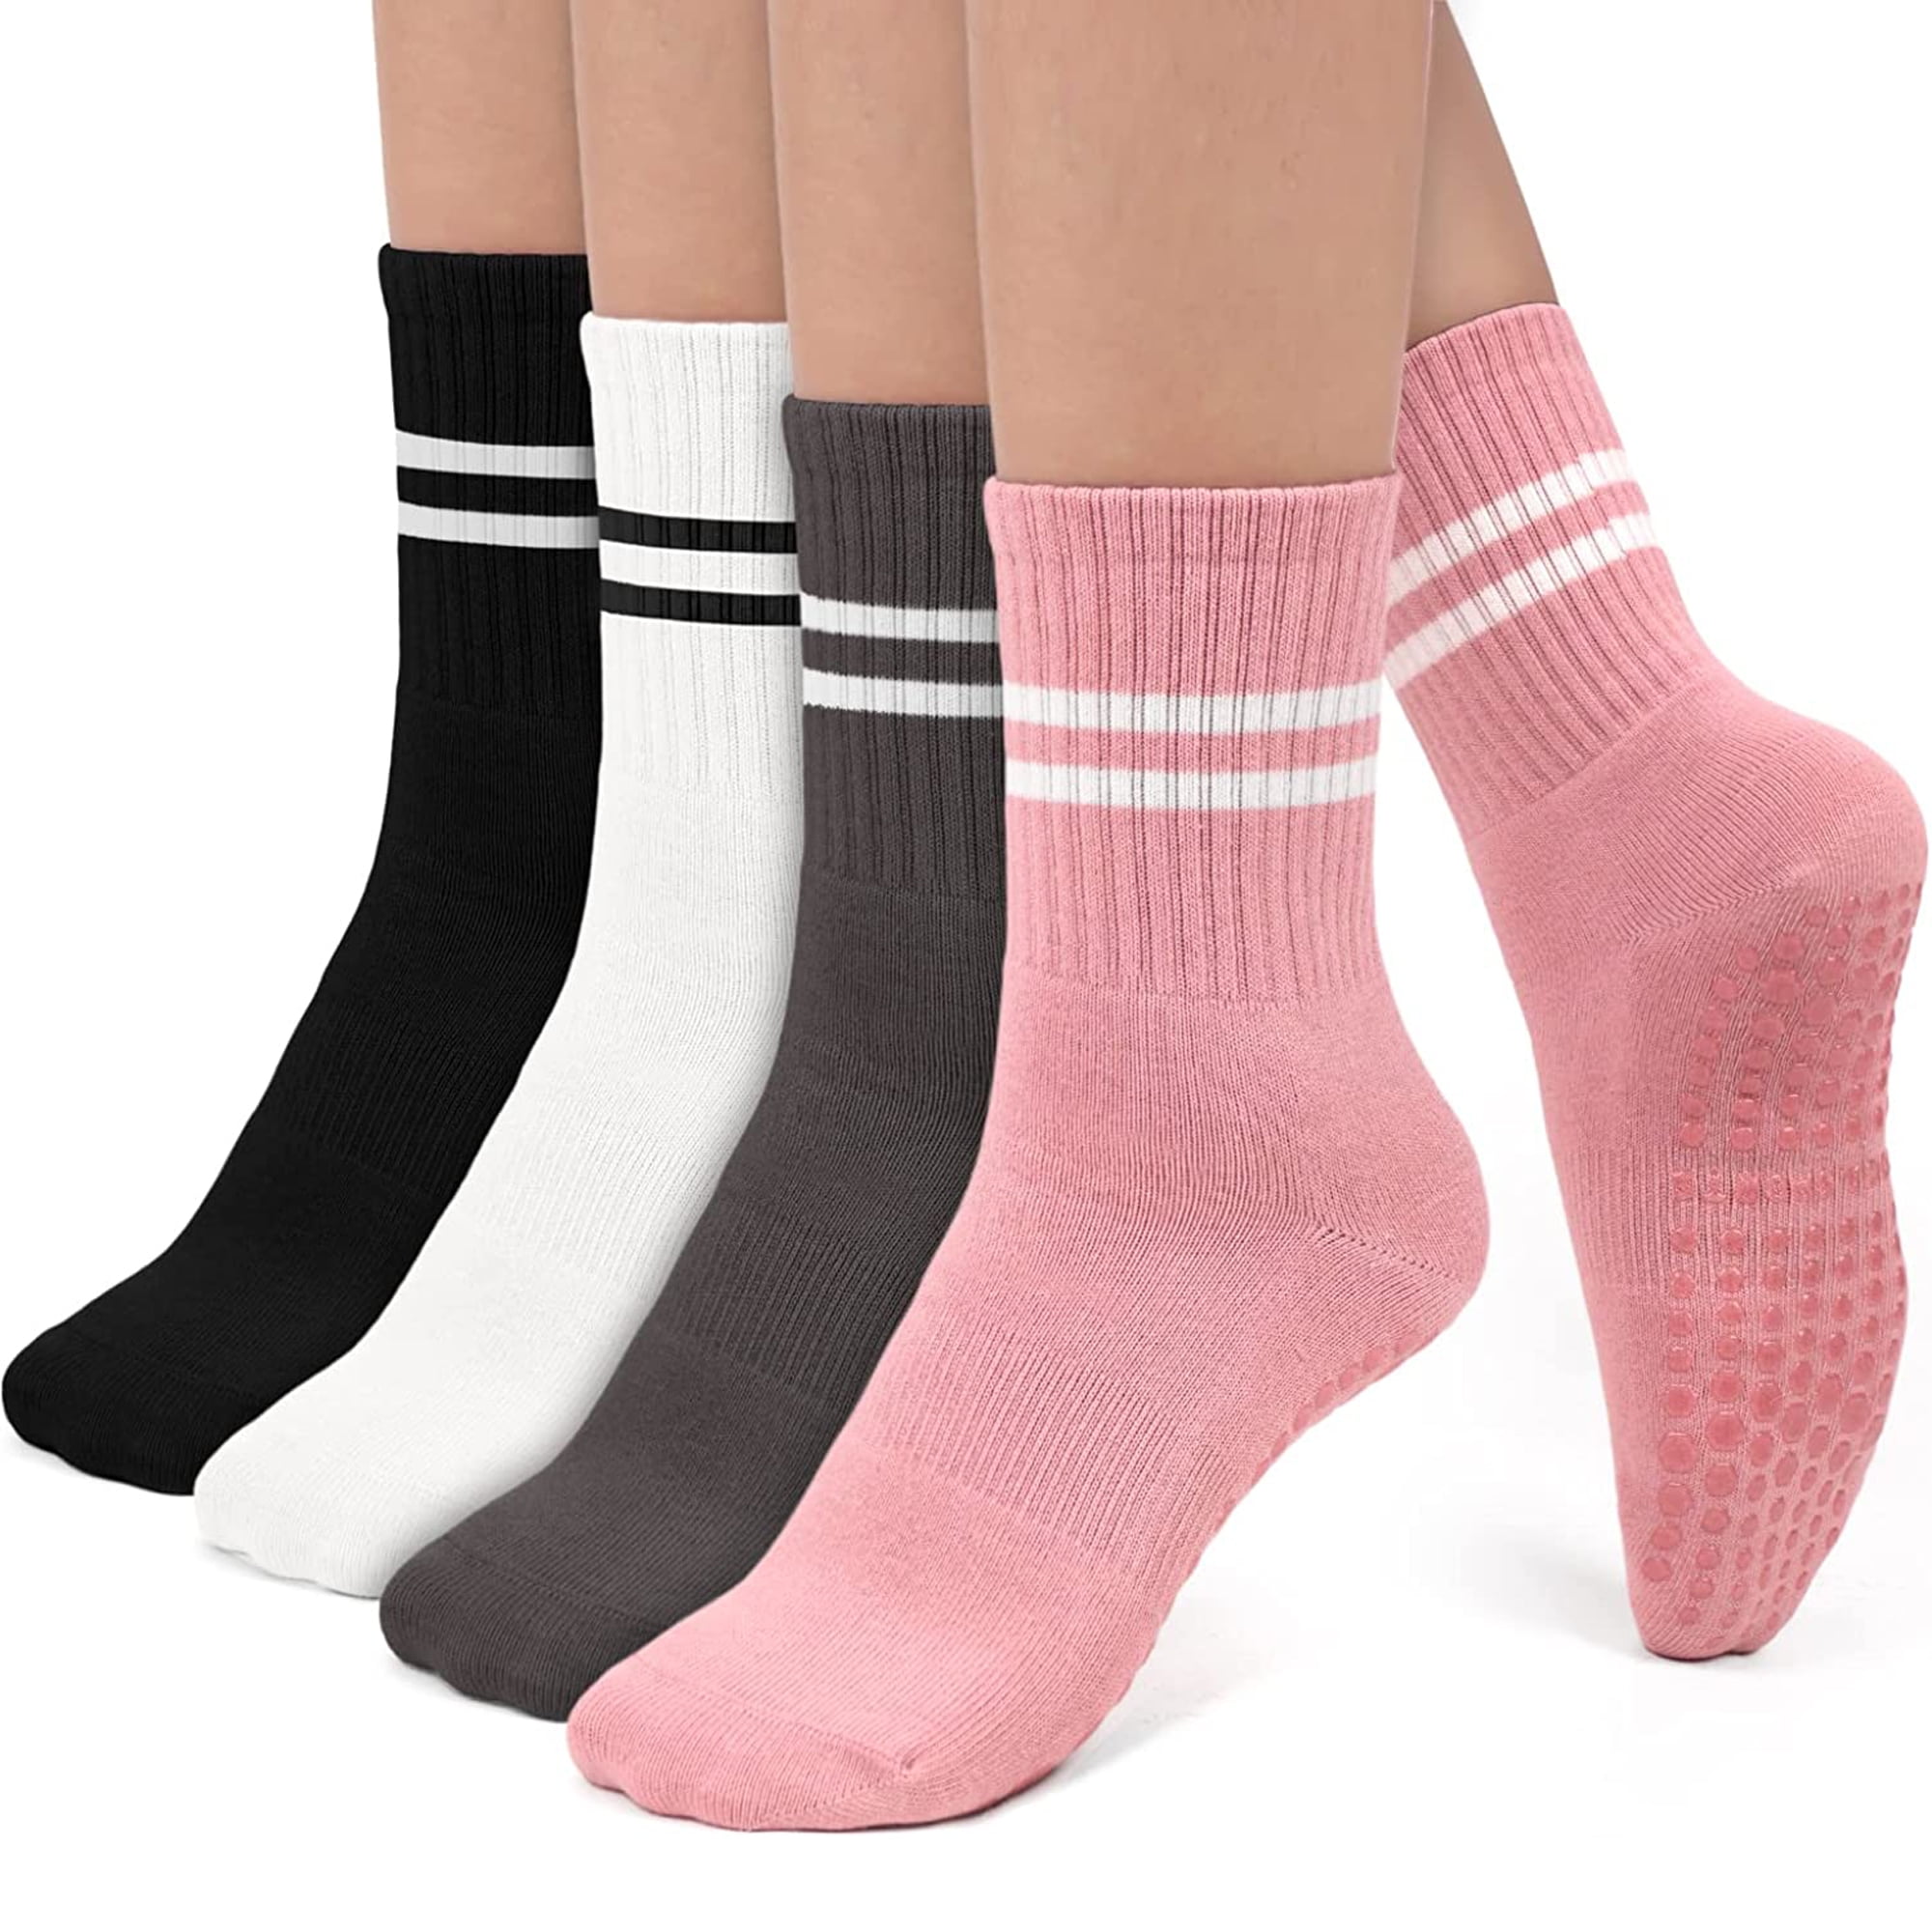 Yoga Socks Non Slip Socks, Cotton Pilates Socks with Grips for Women, Non  Skid Grippy Hospital Socks for Yoga Pilates Barre Dance Women Men, 4 Pairs  Black 